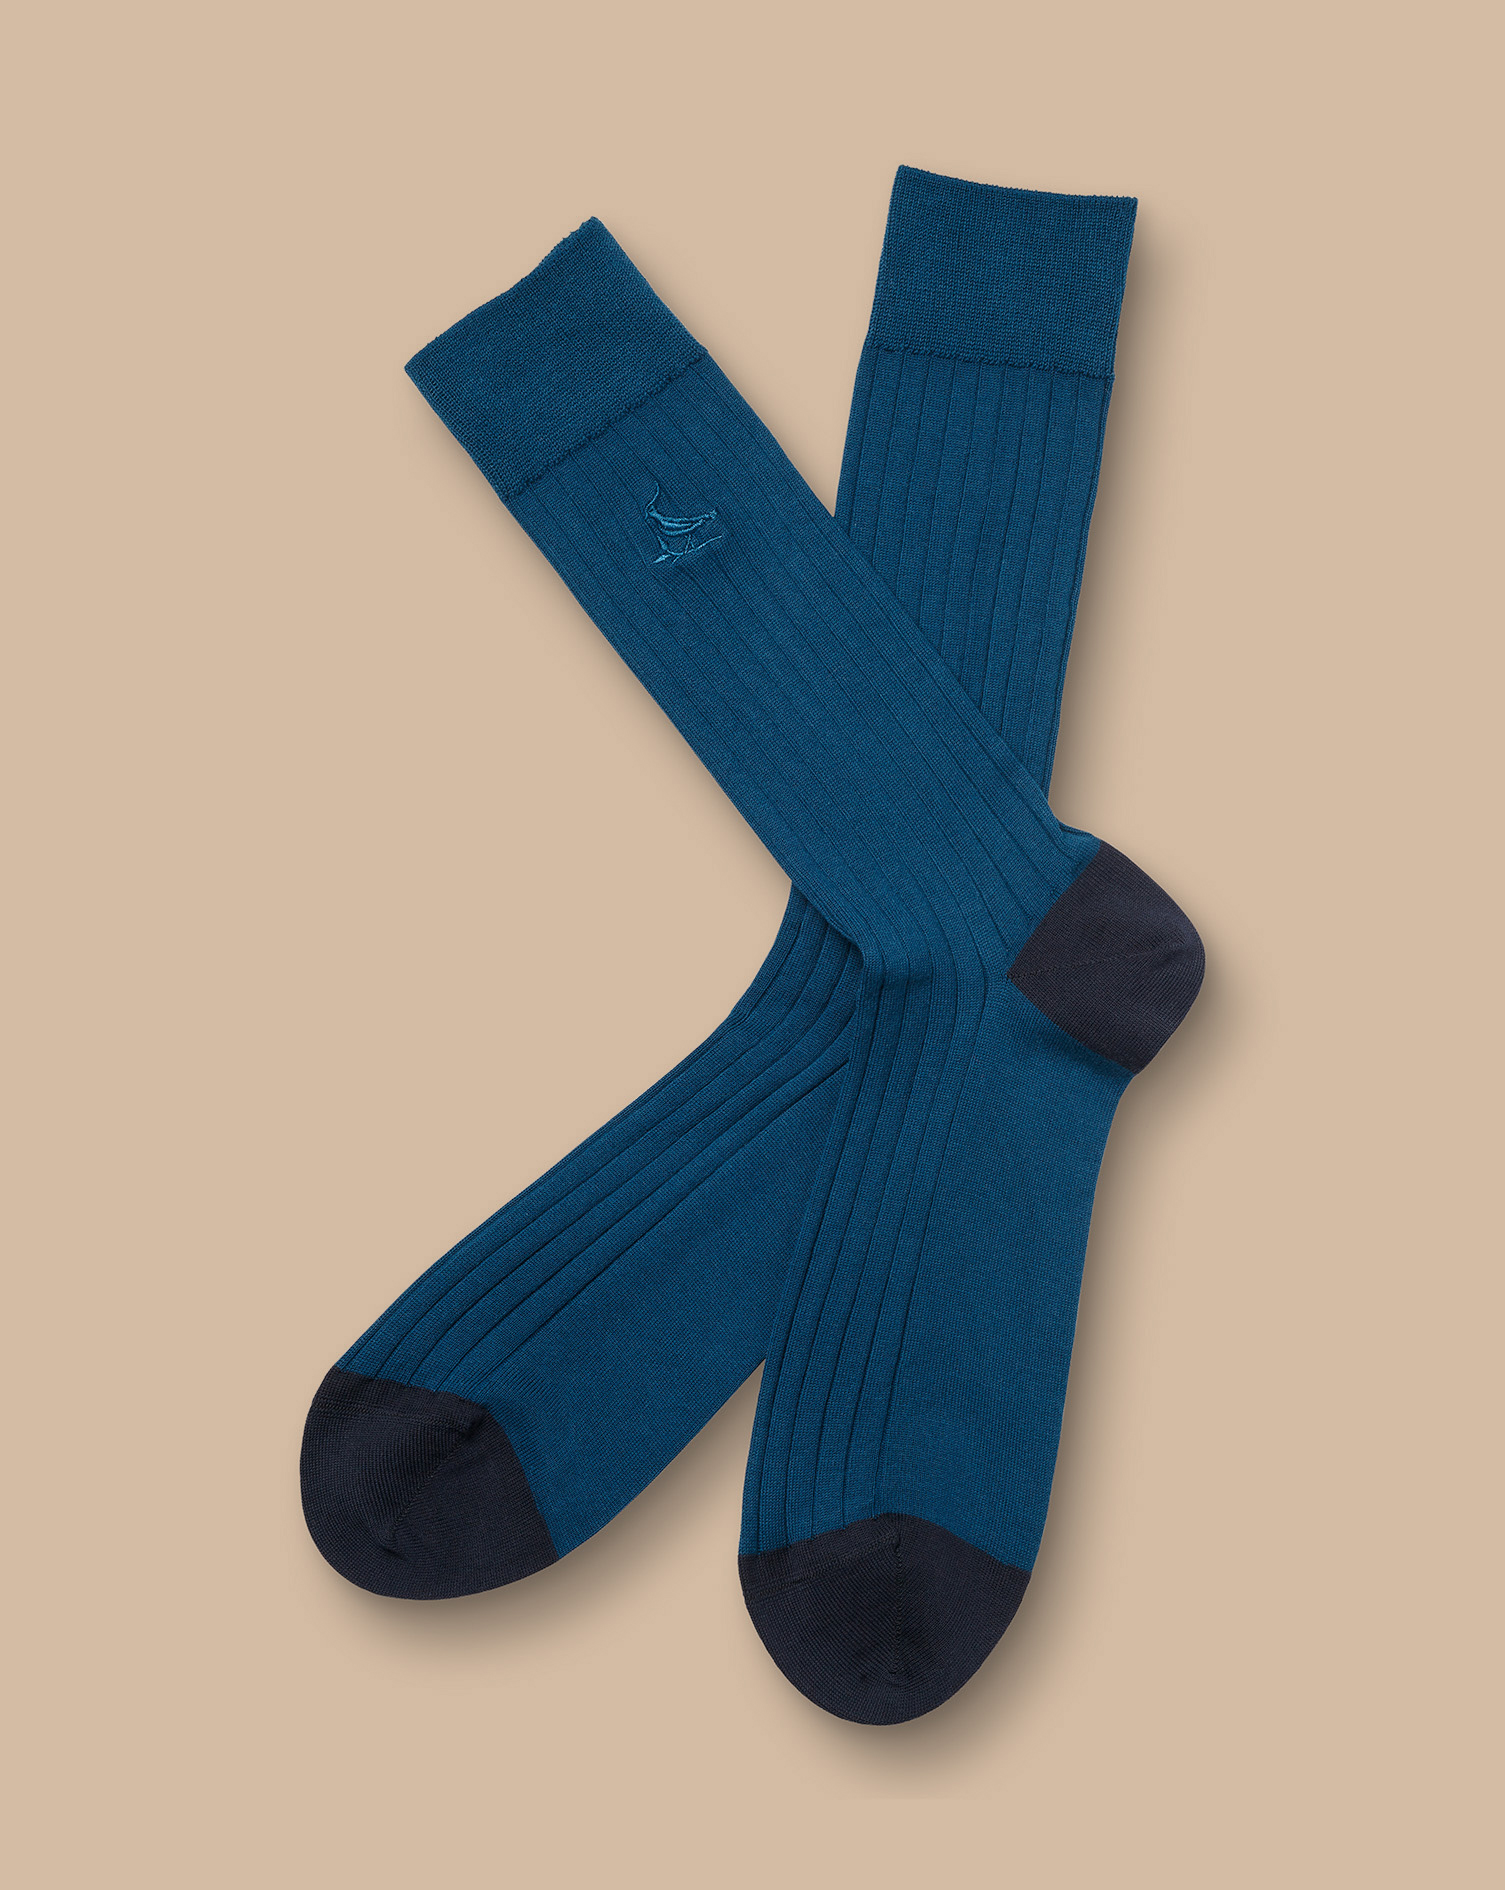 Men's Charles Tyrwhitt Rib Socks - Dark Turquoise Blue Size 6-10 Cotton
